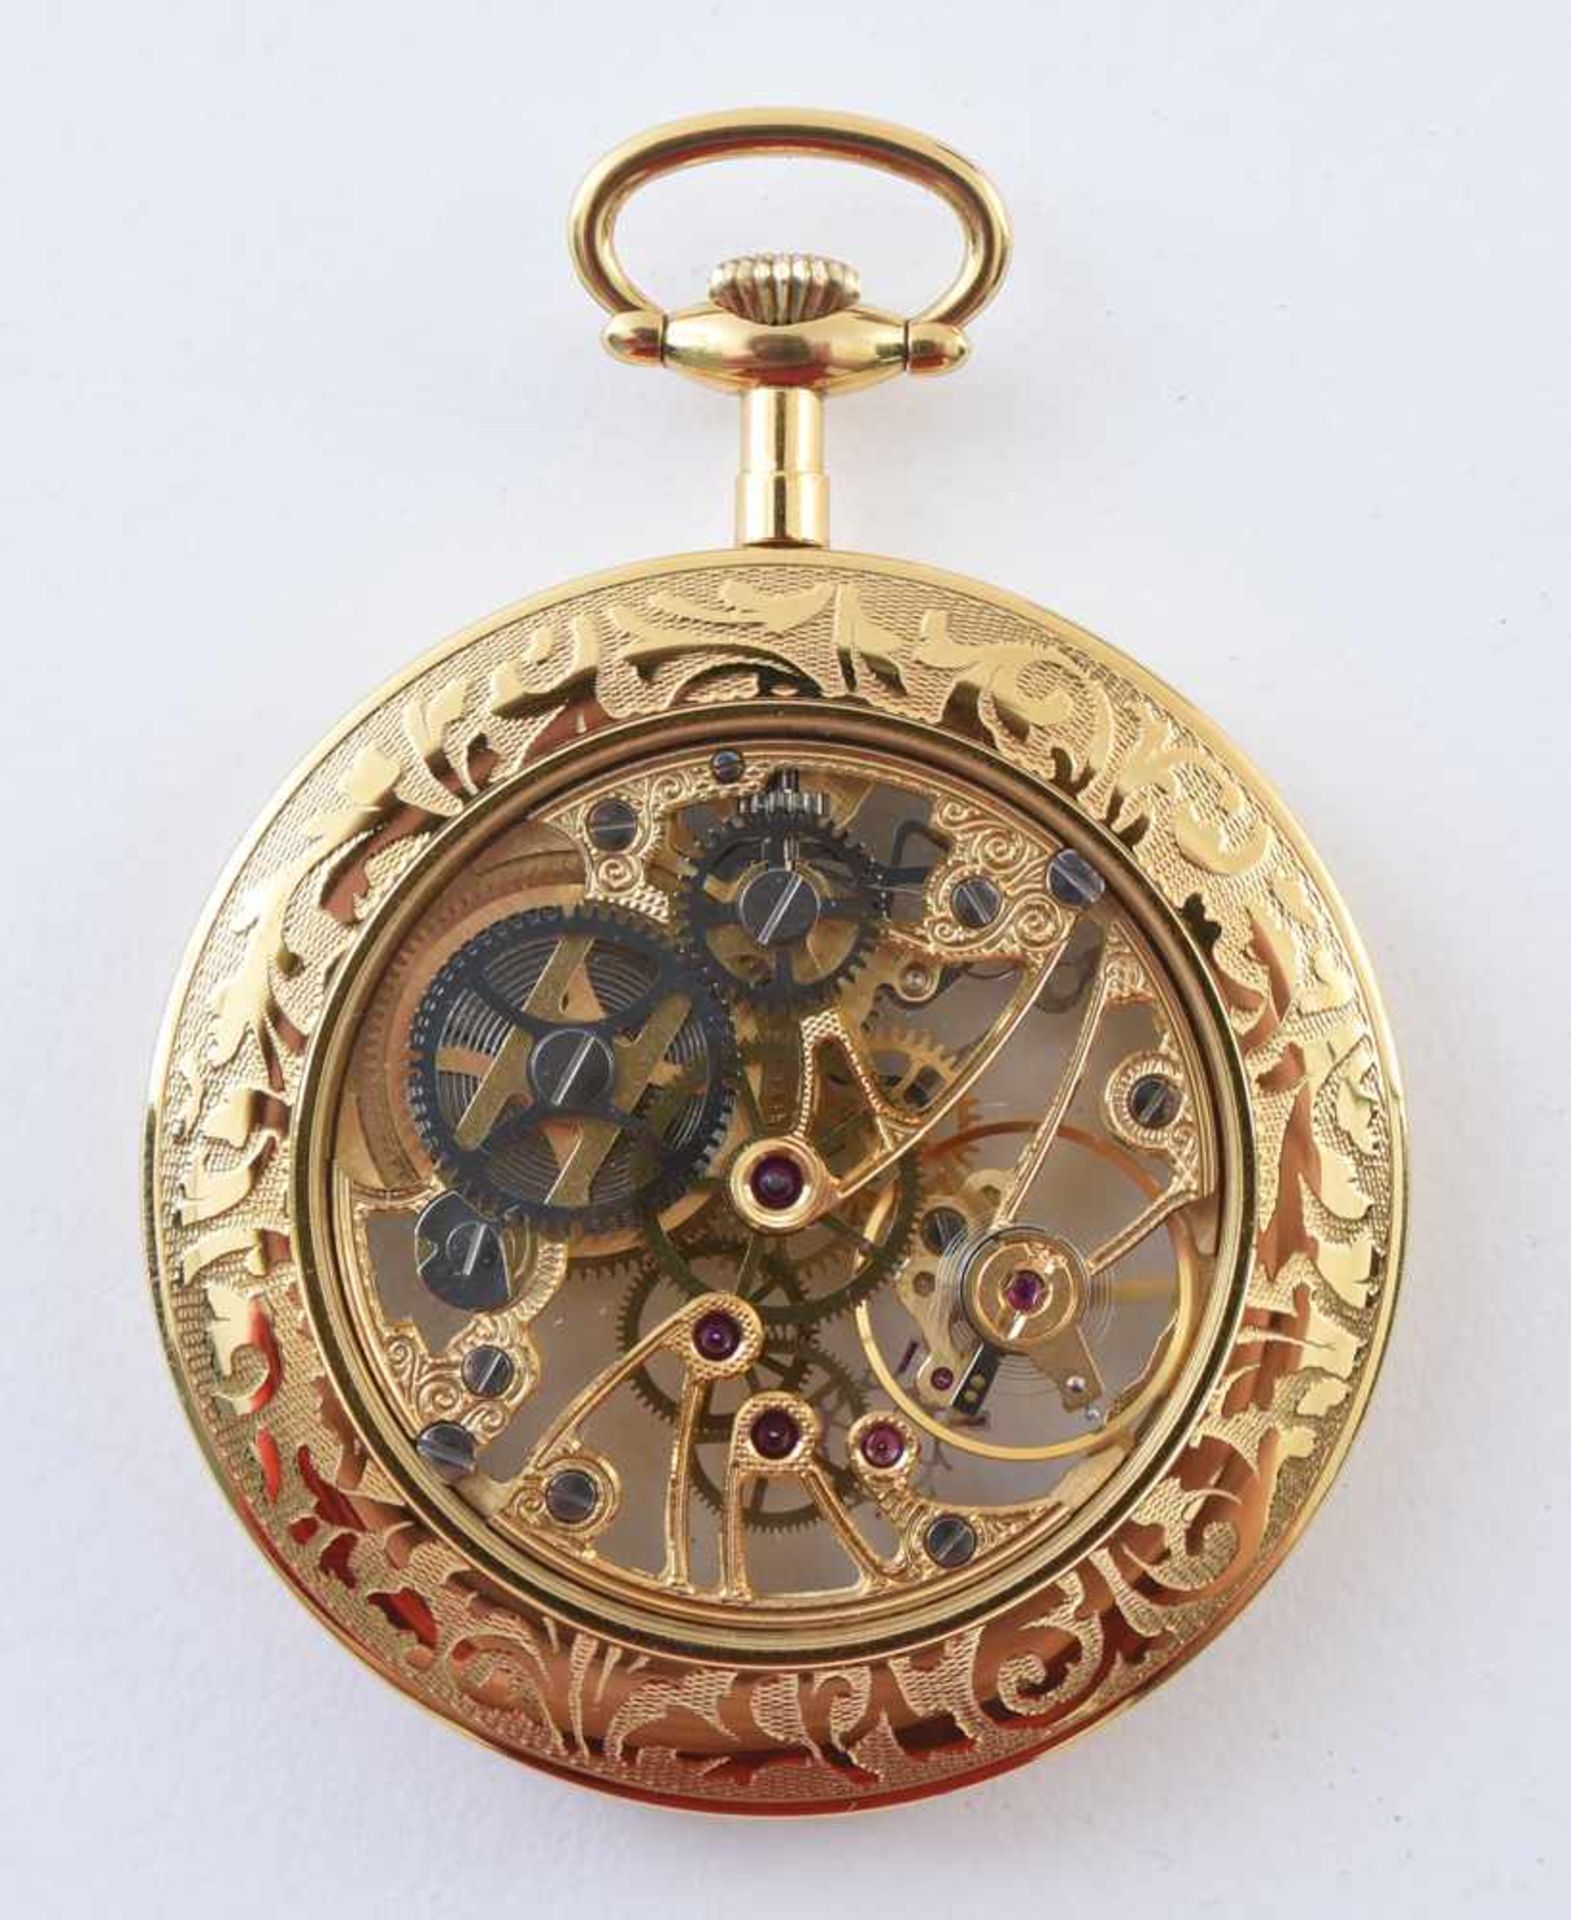 TASCHENUHR, Tissot, vergoldet, 20. JahrhundertSkelett-Taschenuhr. TISSOT & fils, Glas signiert, - Bild 3 aus 6